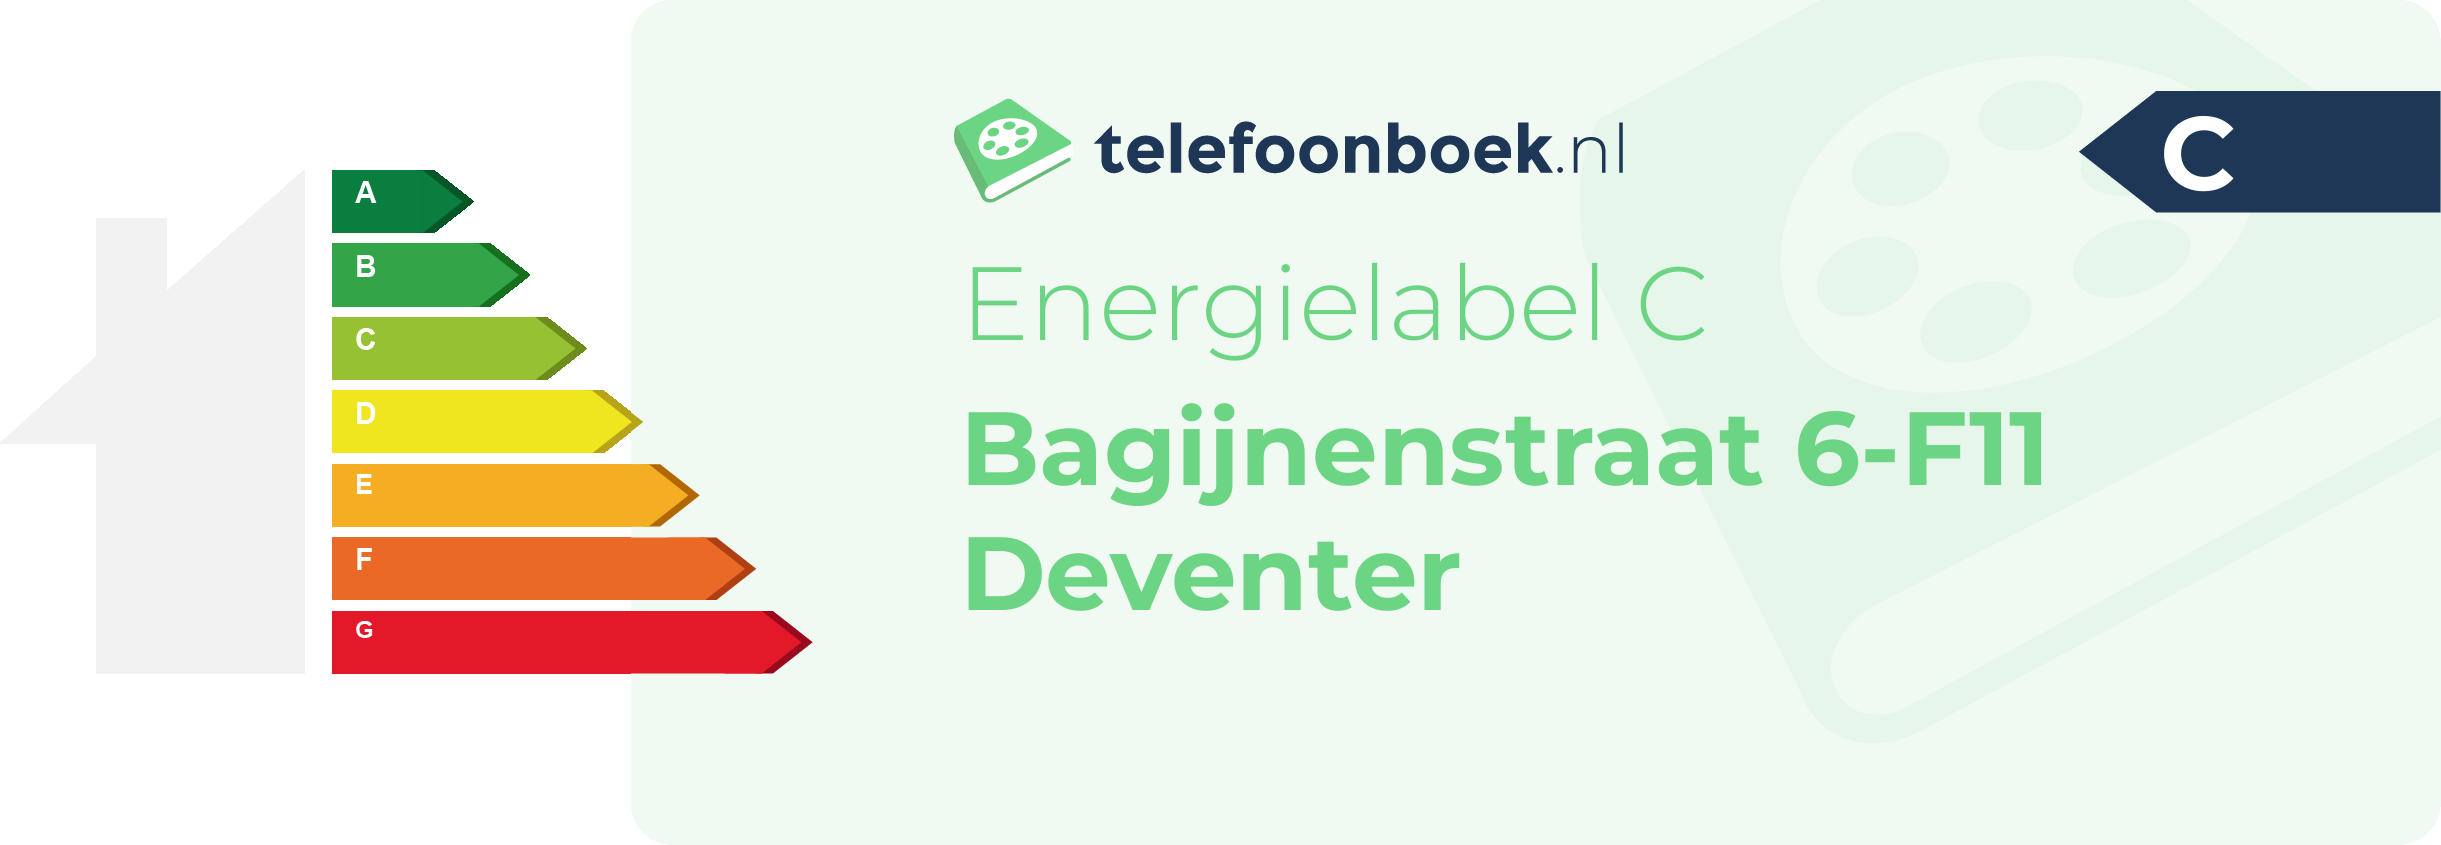 Energielabel Bagijnenstraat 6-F11 Deventer